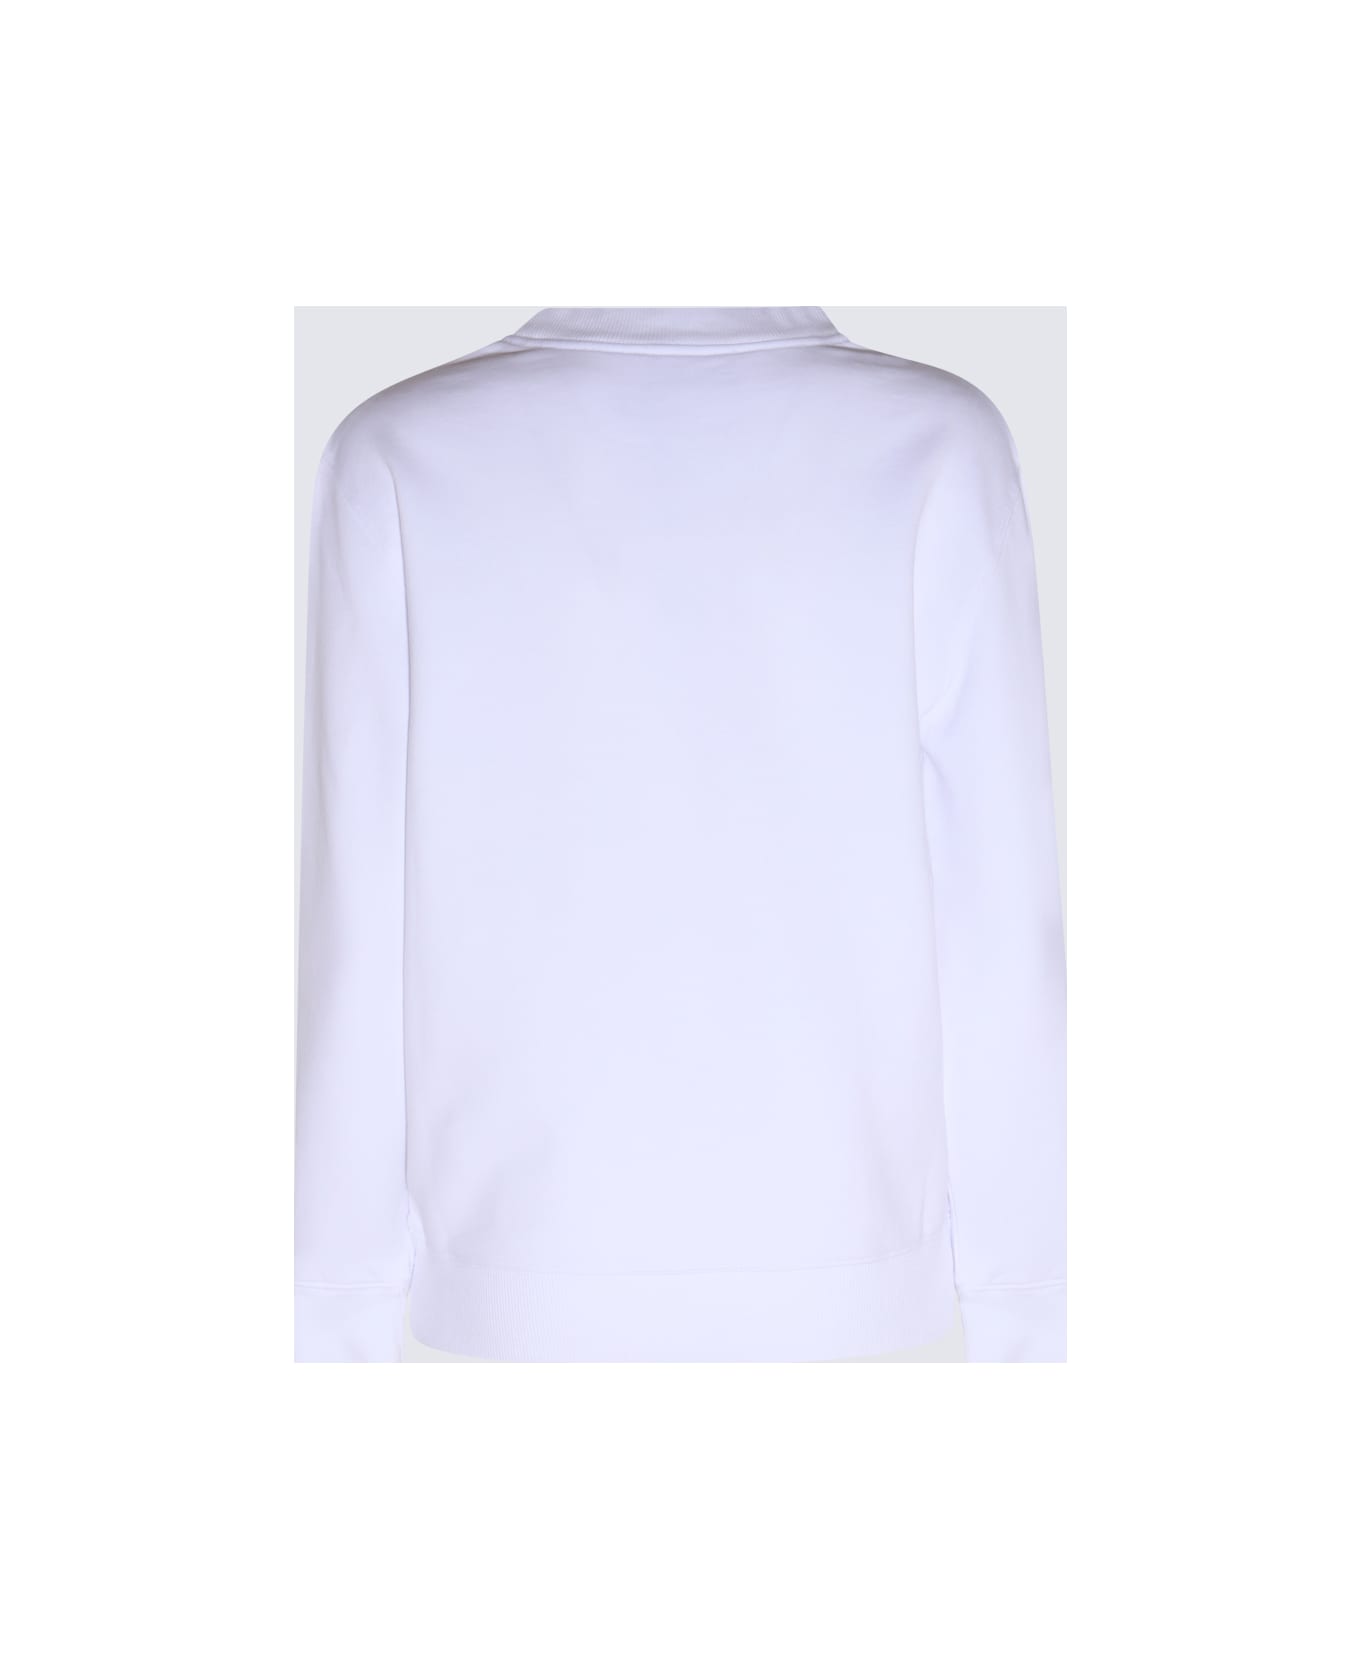 Lanvin White Cotton Sweatshirt - White フリース